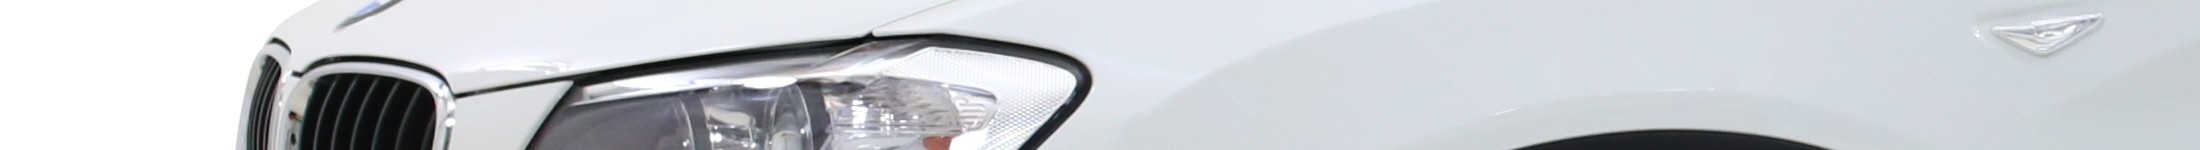 Baner modelu BMW X5 na abonament